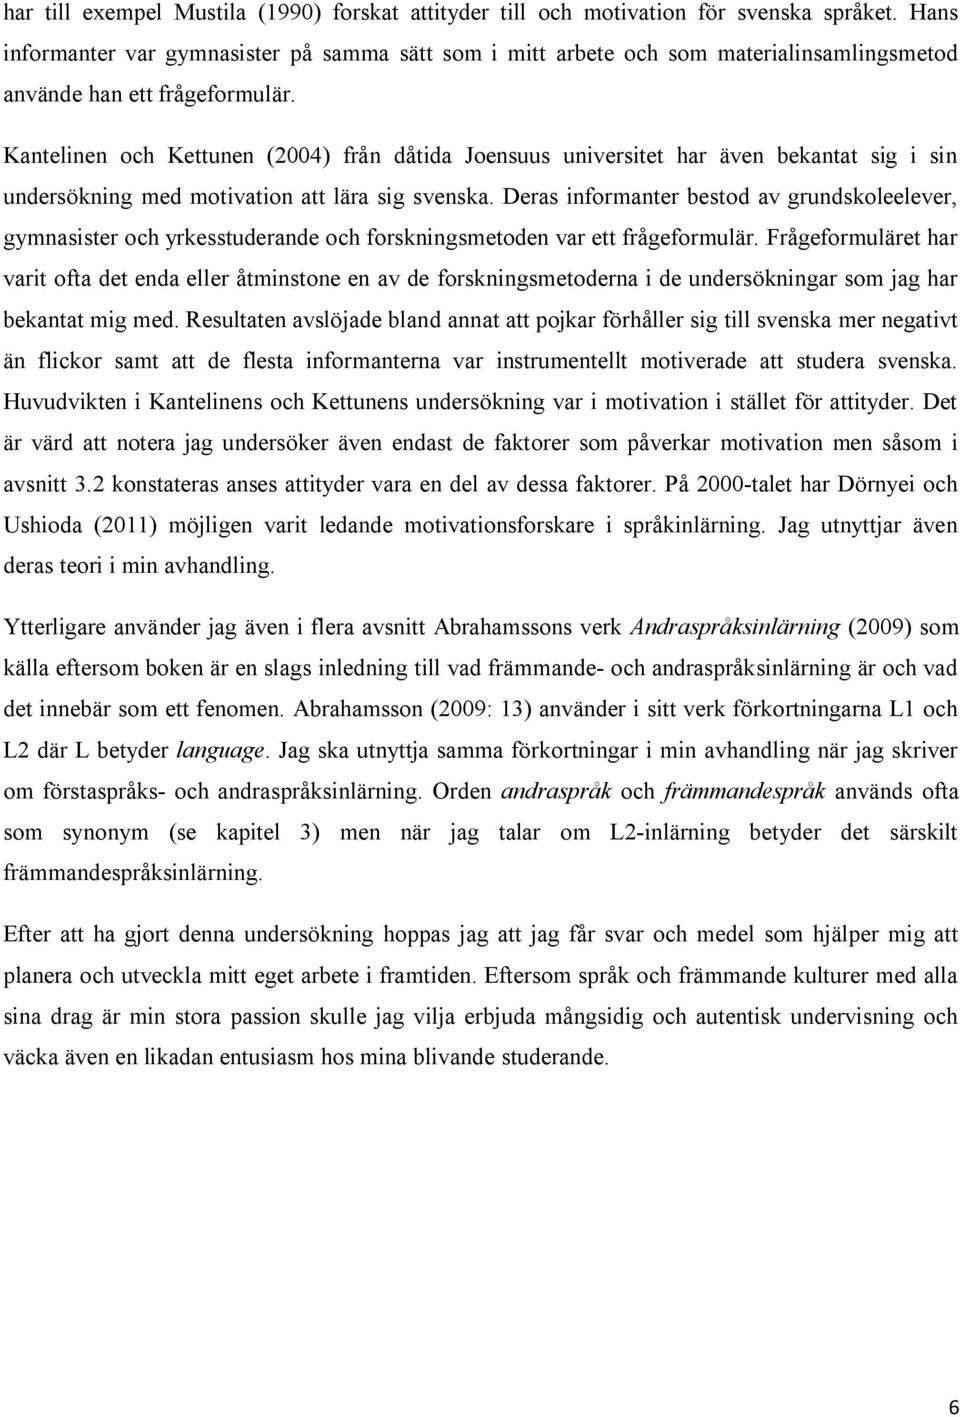 Kantelinen och Kettunen (2004) från dåtida Joensuus universitet har även bekantat sig i sin undersökning med motivation att lära sig svenska.